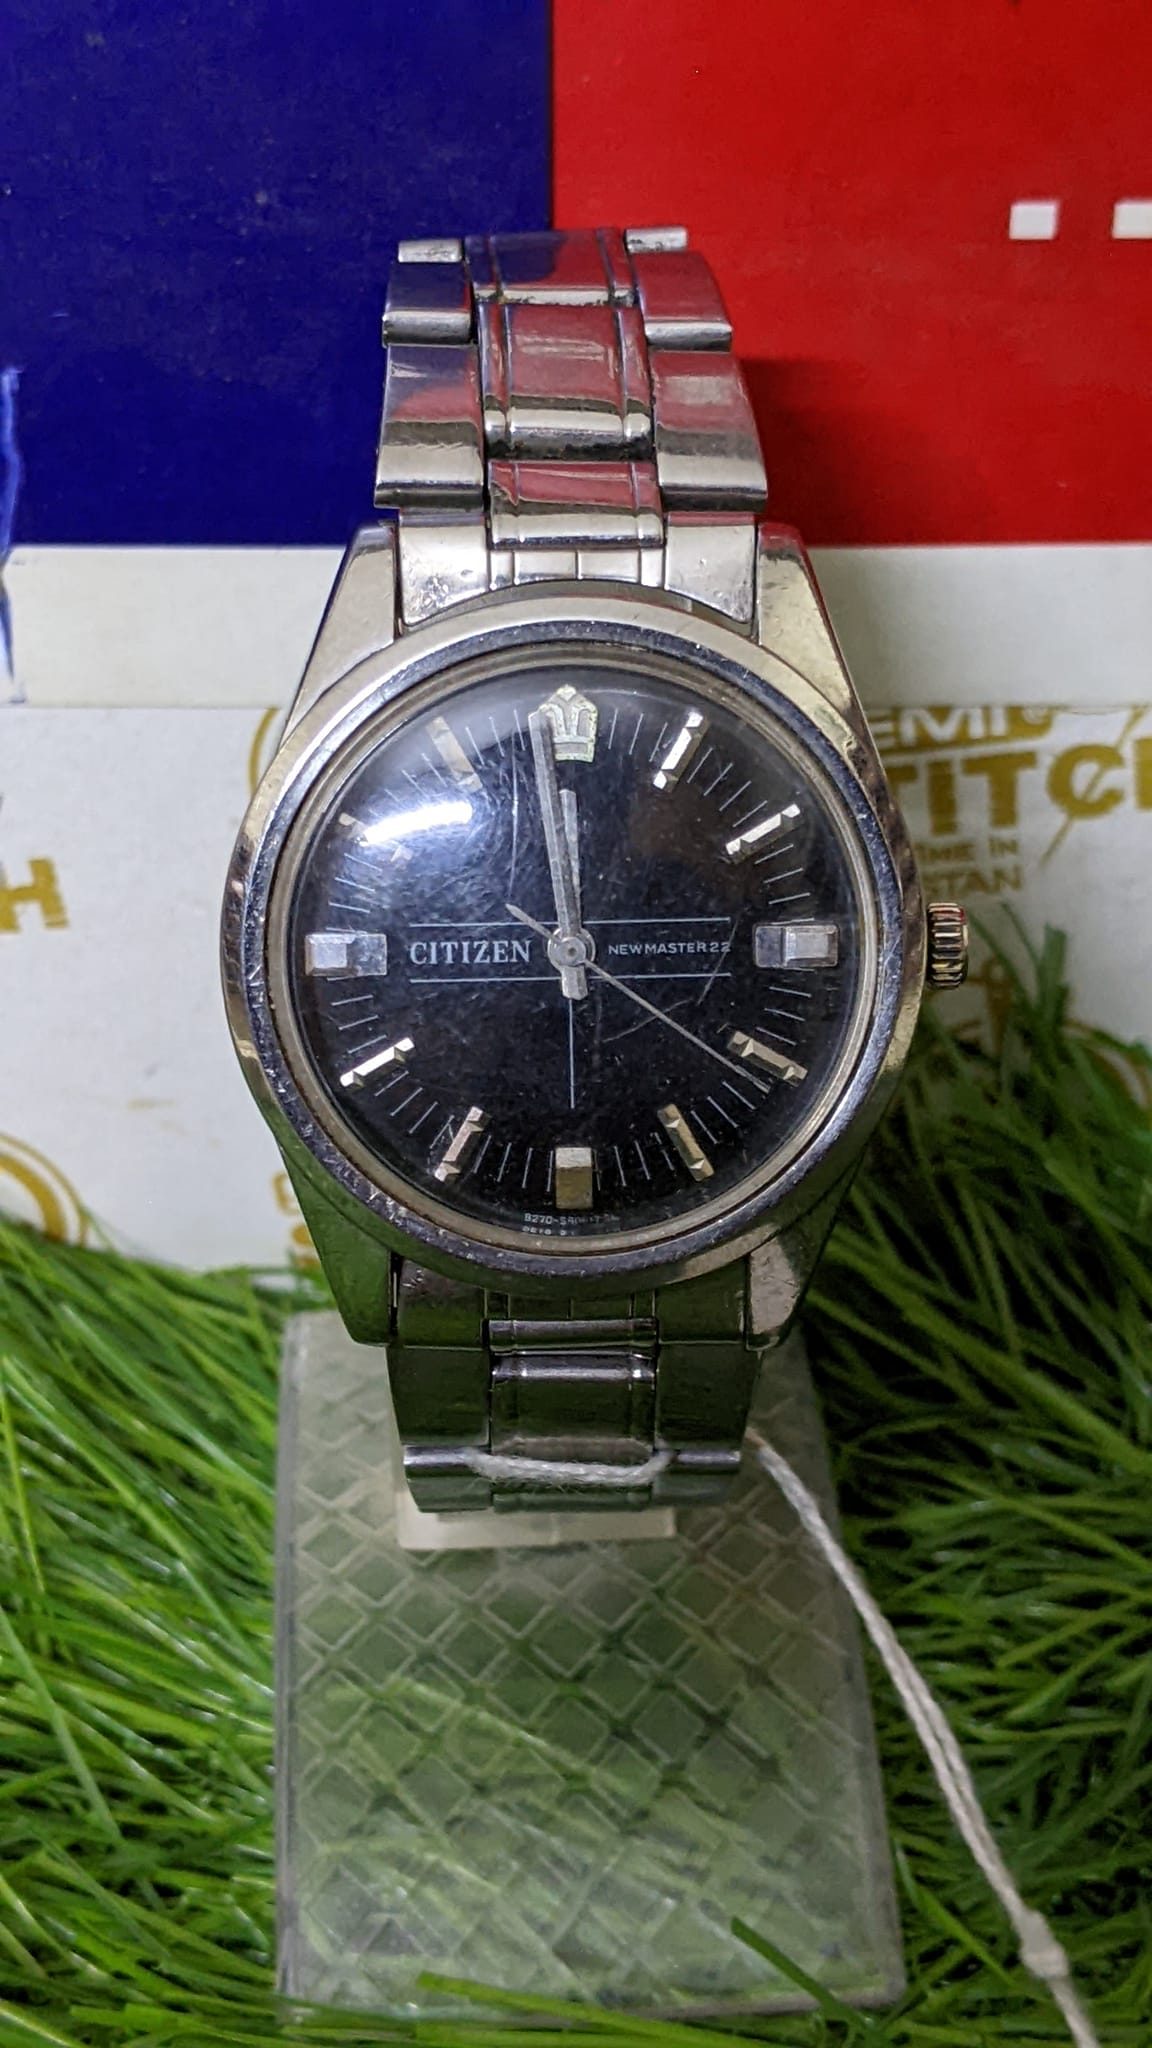 CITIZEN 17 Jewels, Movt Cal 8270A Japan men's wrist Vintage Watch